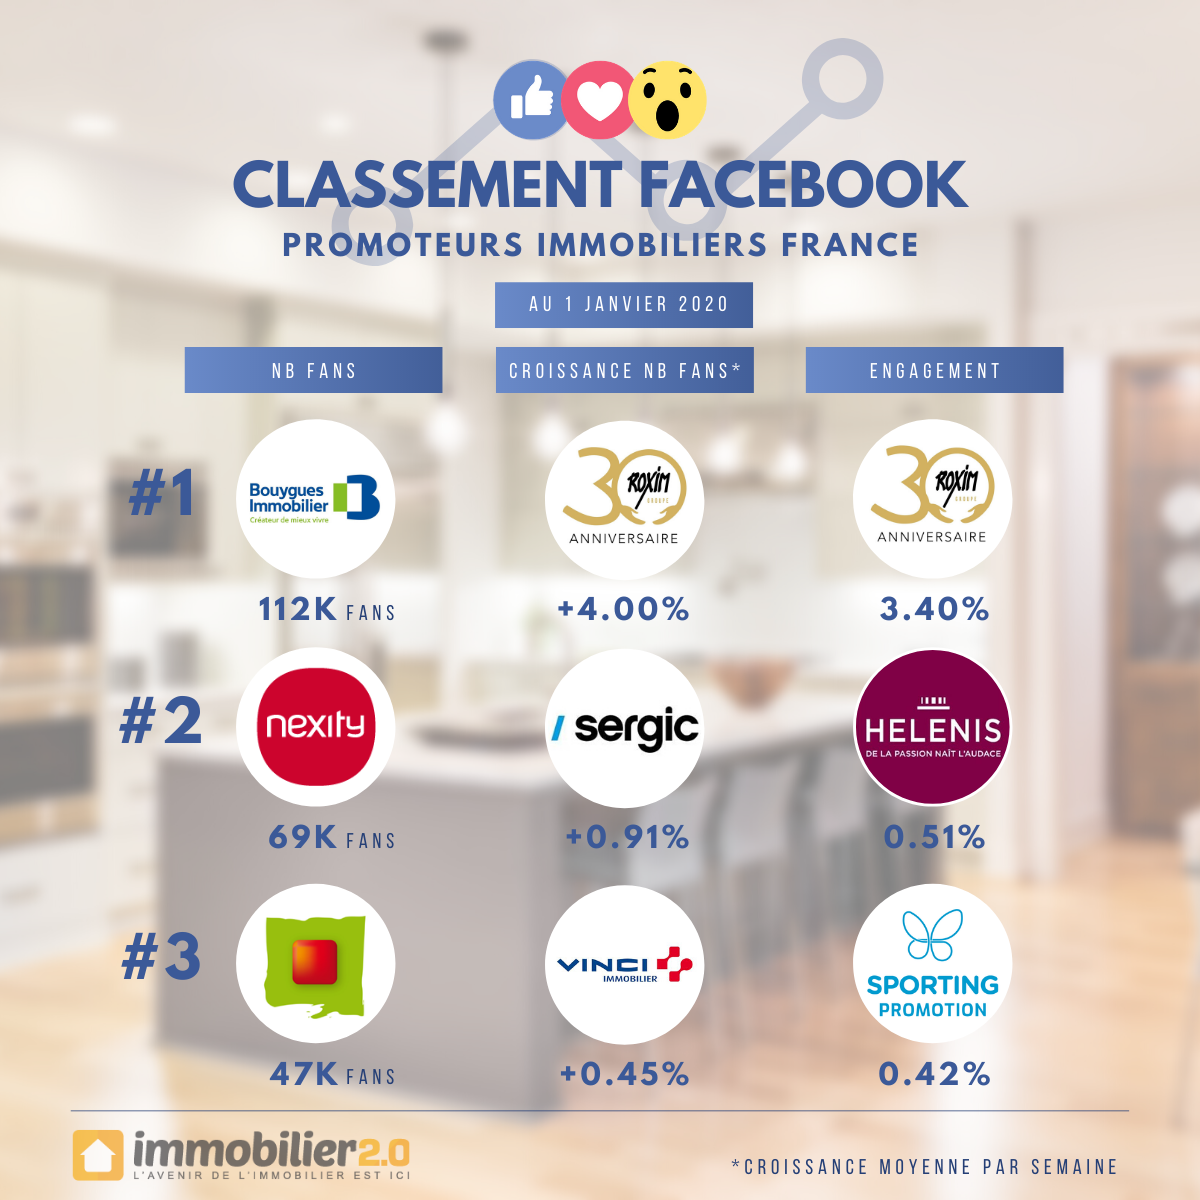 Classement Facebook Promoteurs Immobiliers France Janvier 2020